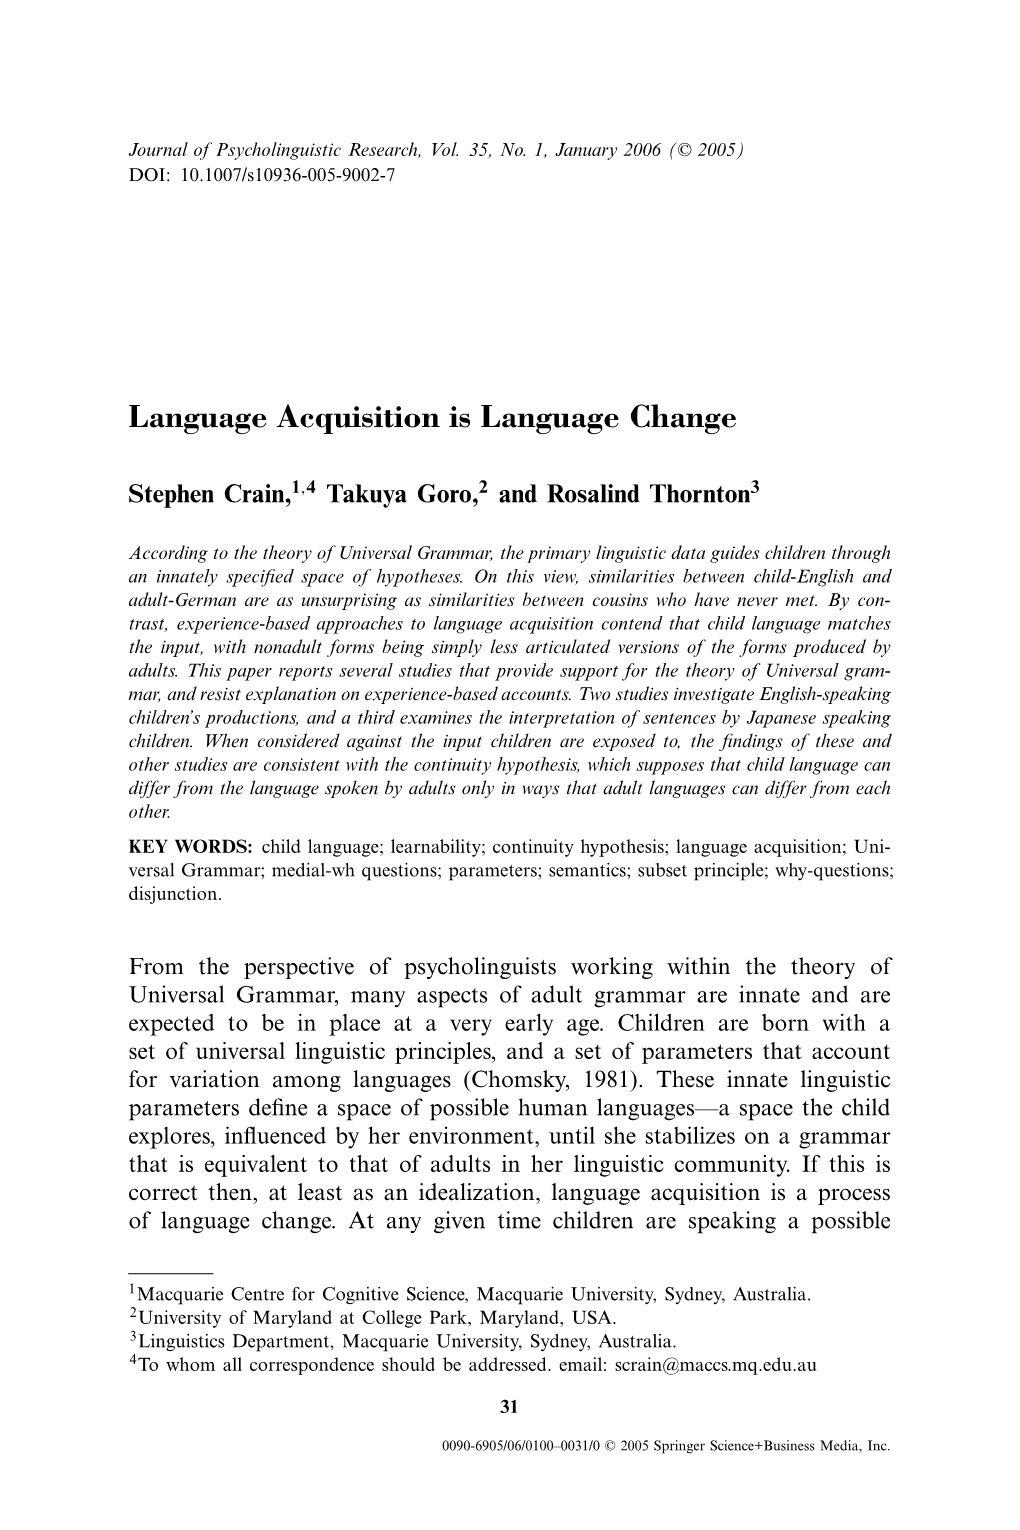 Language Acquisition Is Language Change